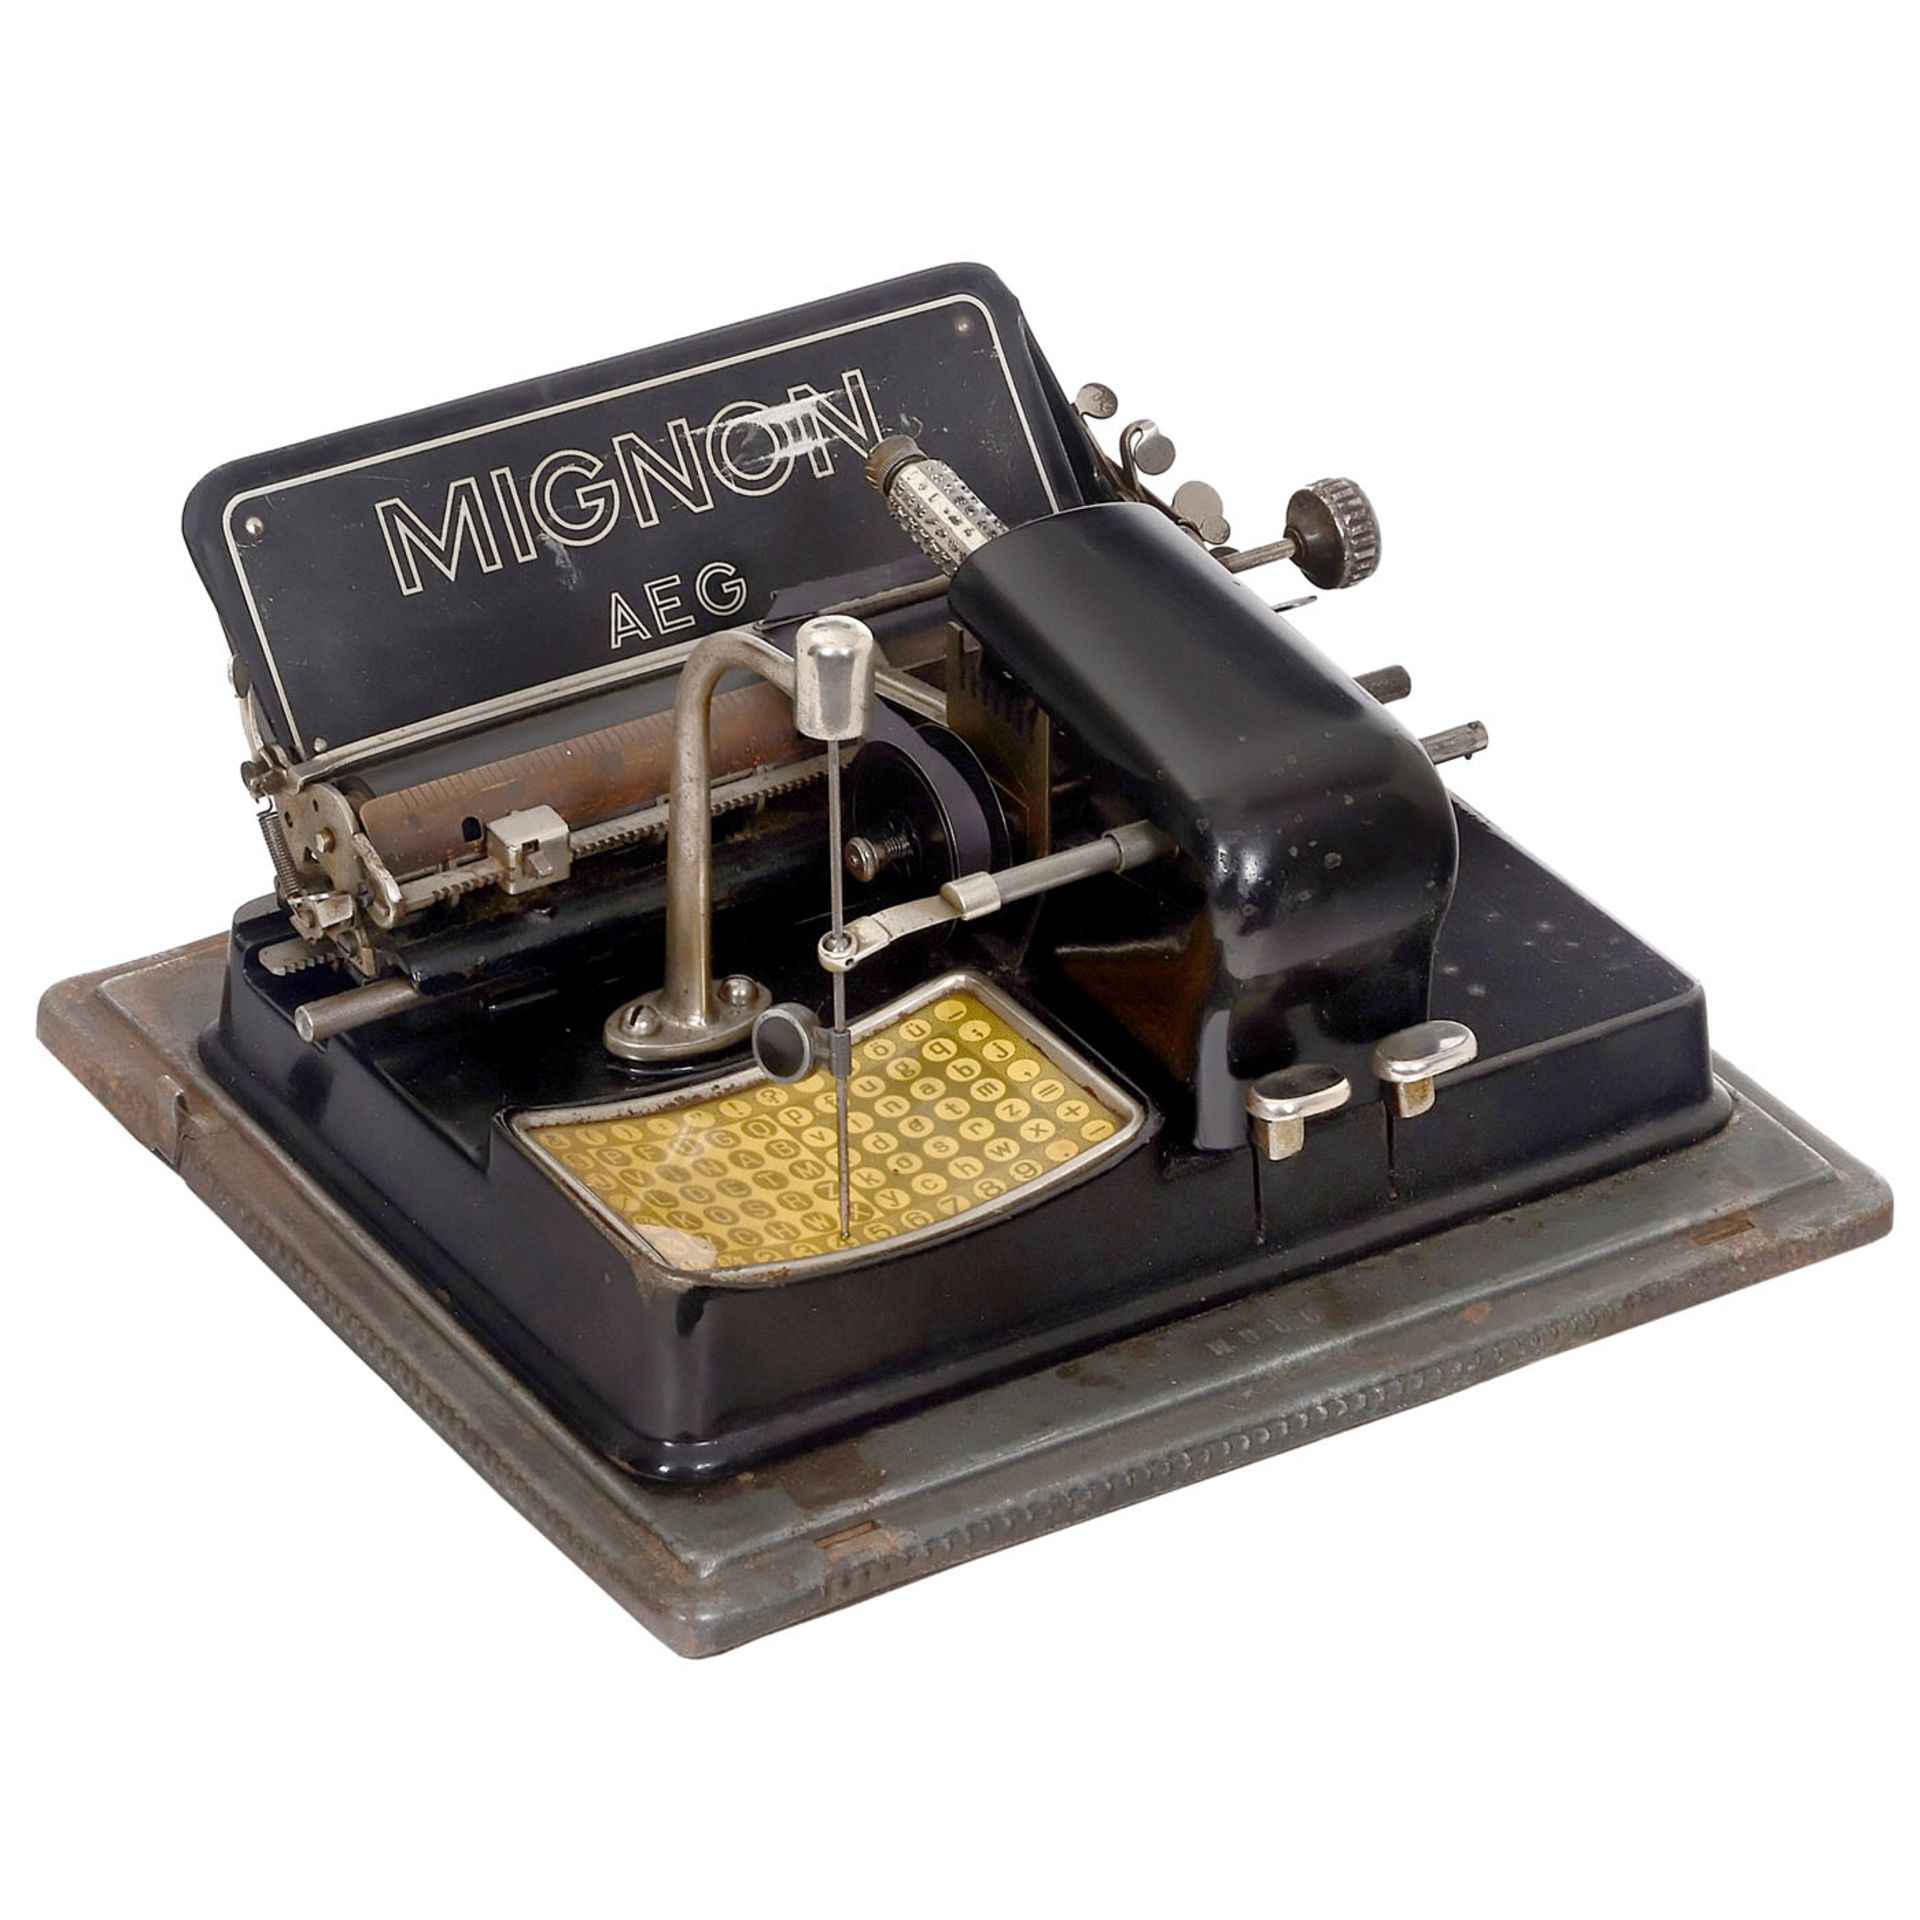 2 Mignon Typewriters and an Odhner Calculating Machine - Bild 3 aus 4